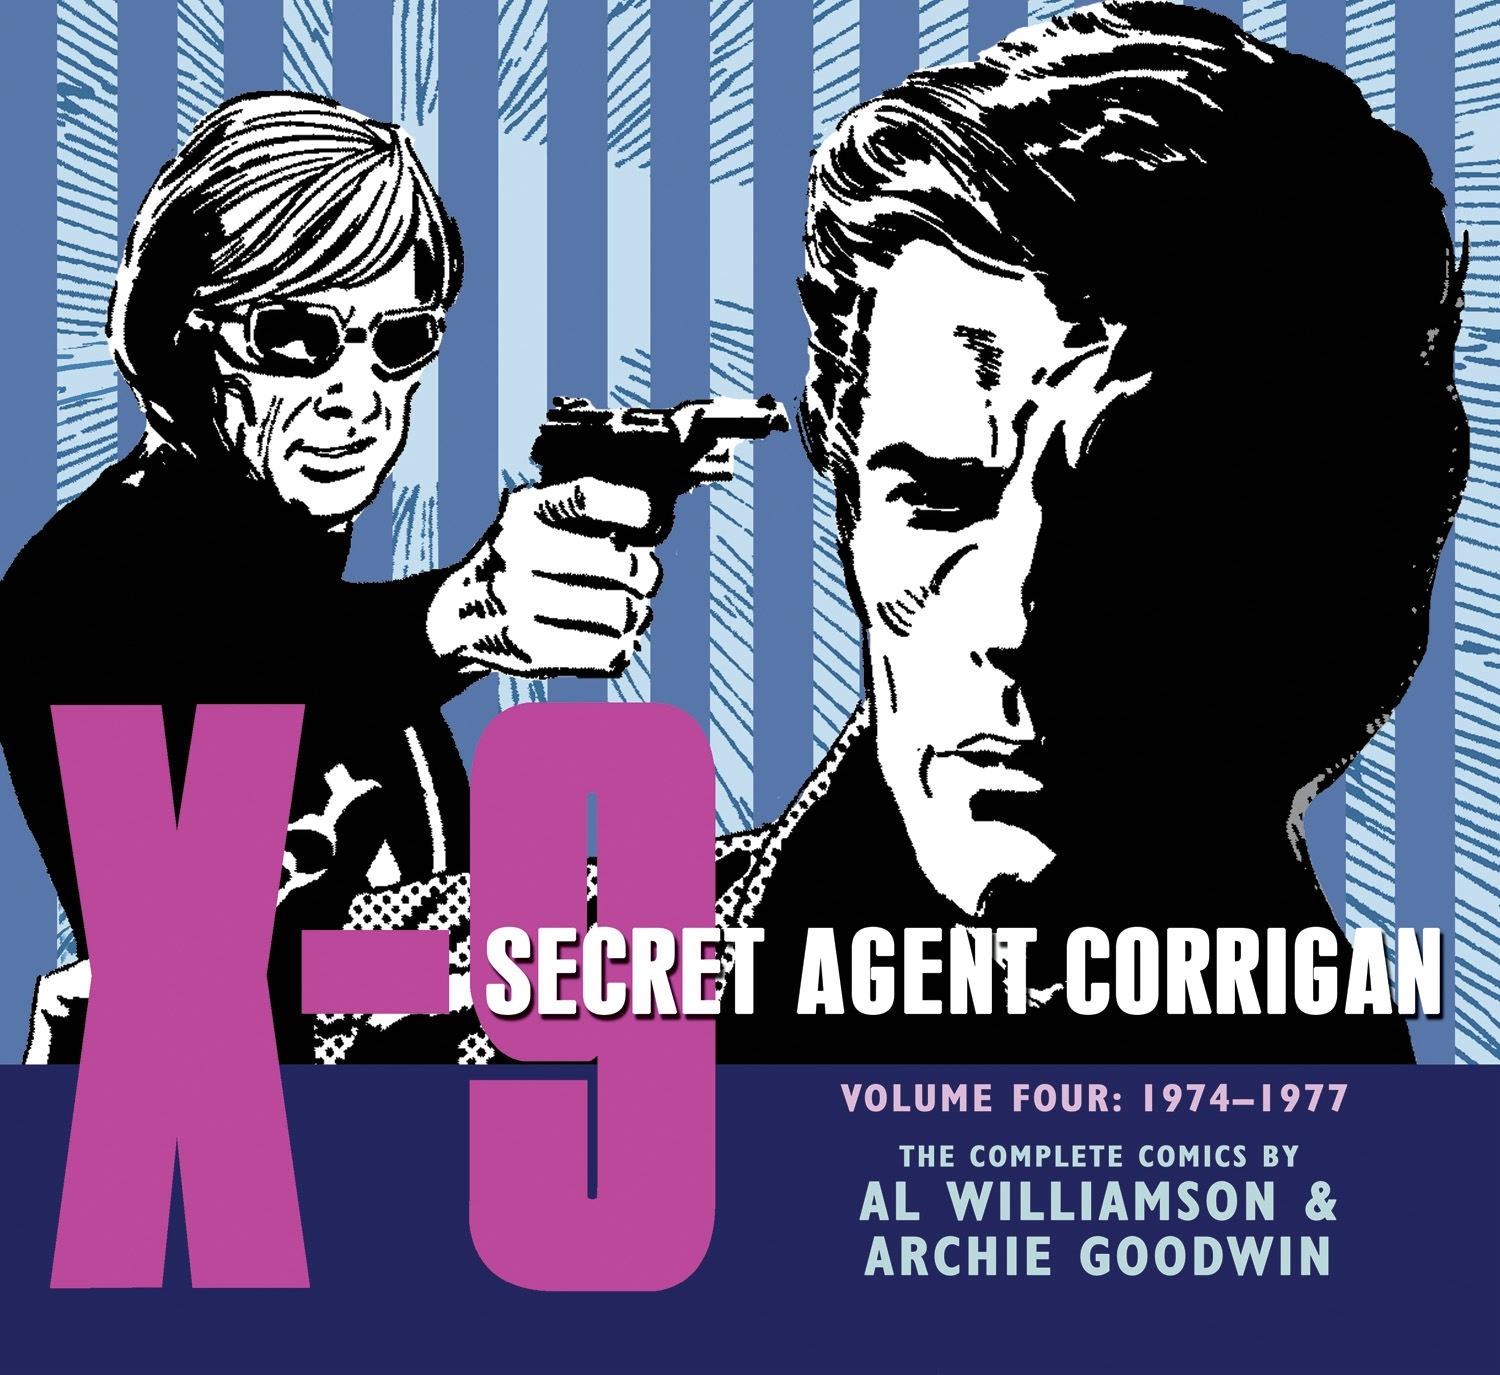 secret agents four